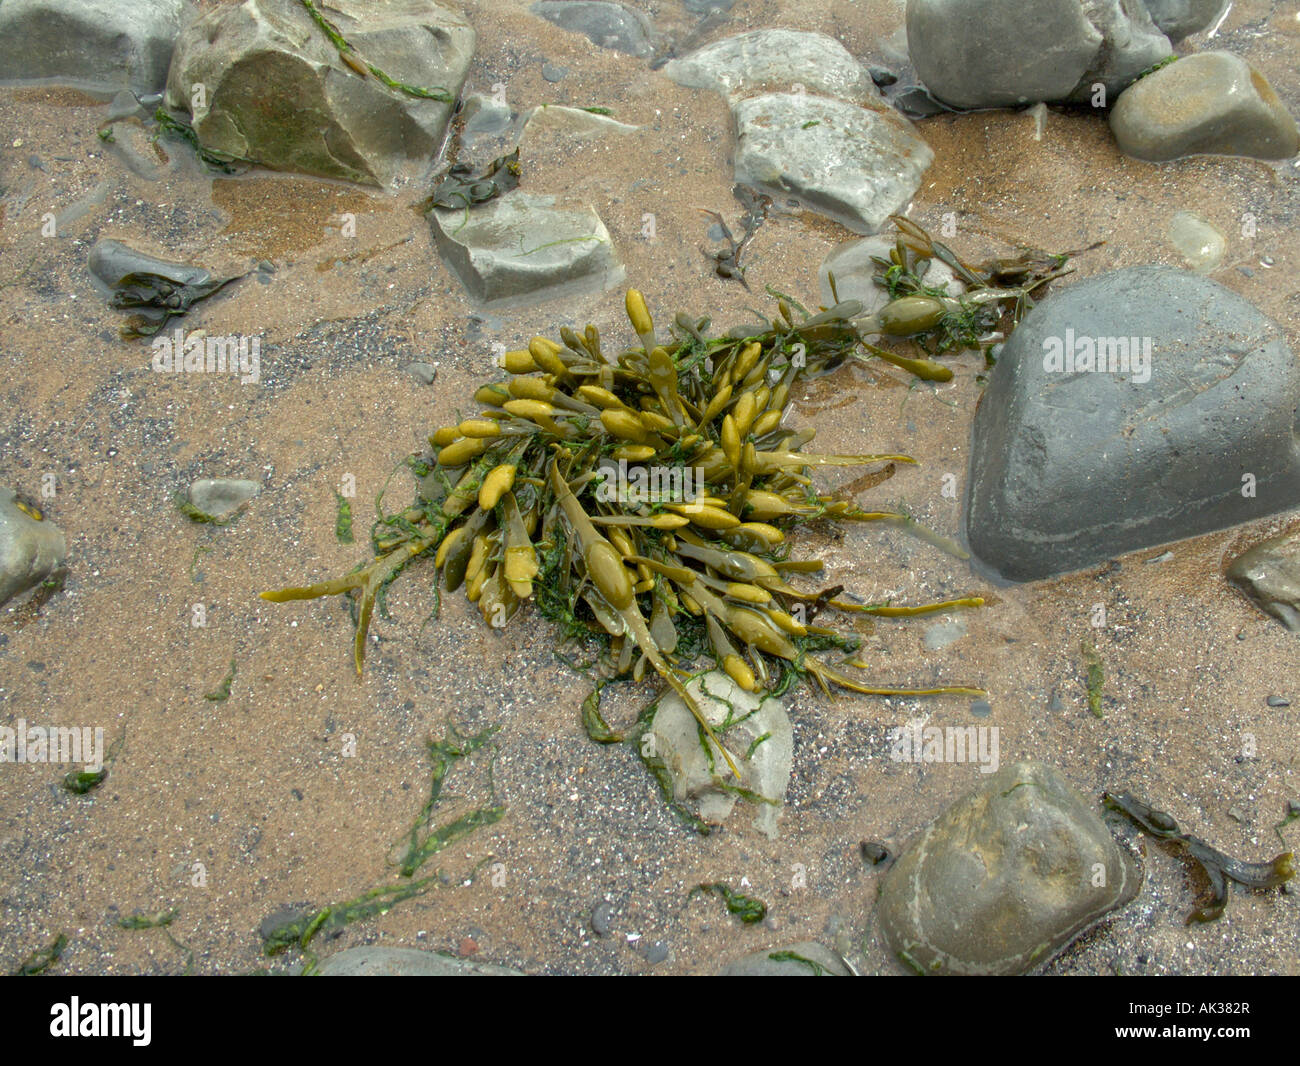 Alghe marine su una spiaggia, Bladderwrack Seaweed Fucus Vesiculosus, vita vegetale marina litorale della costa britannica. Lavernock Wales Foto Stock